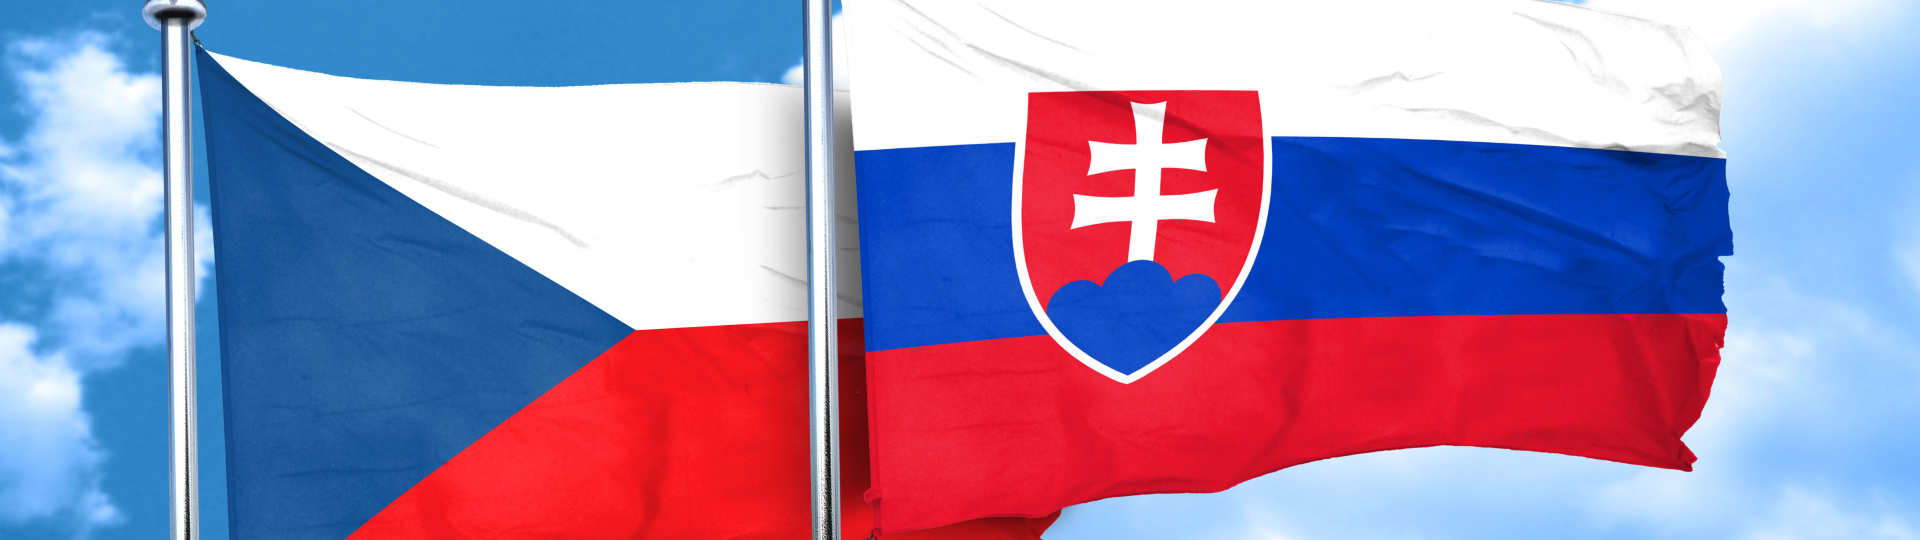 Slováci mají o pětinu nižší mzdy než Češi a trpí třikrát vyšší nezaměstnaností